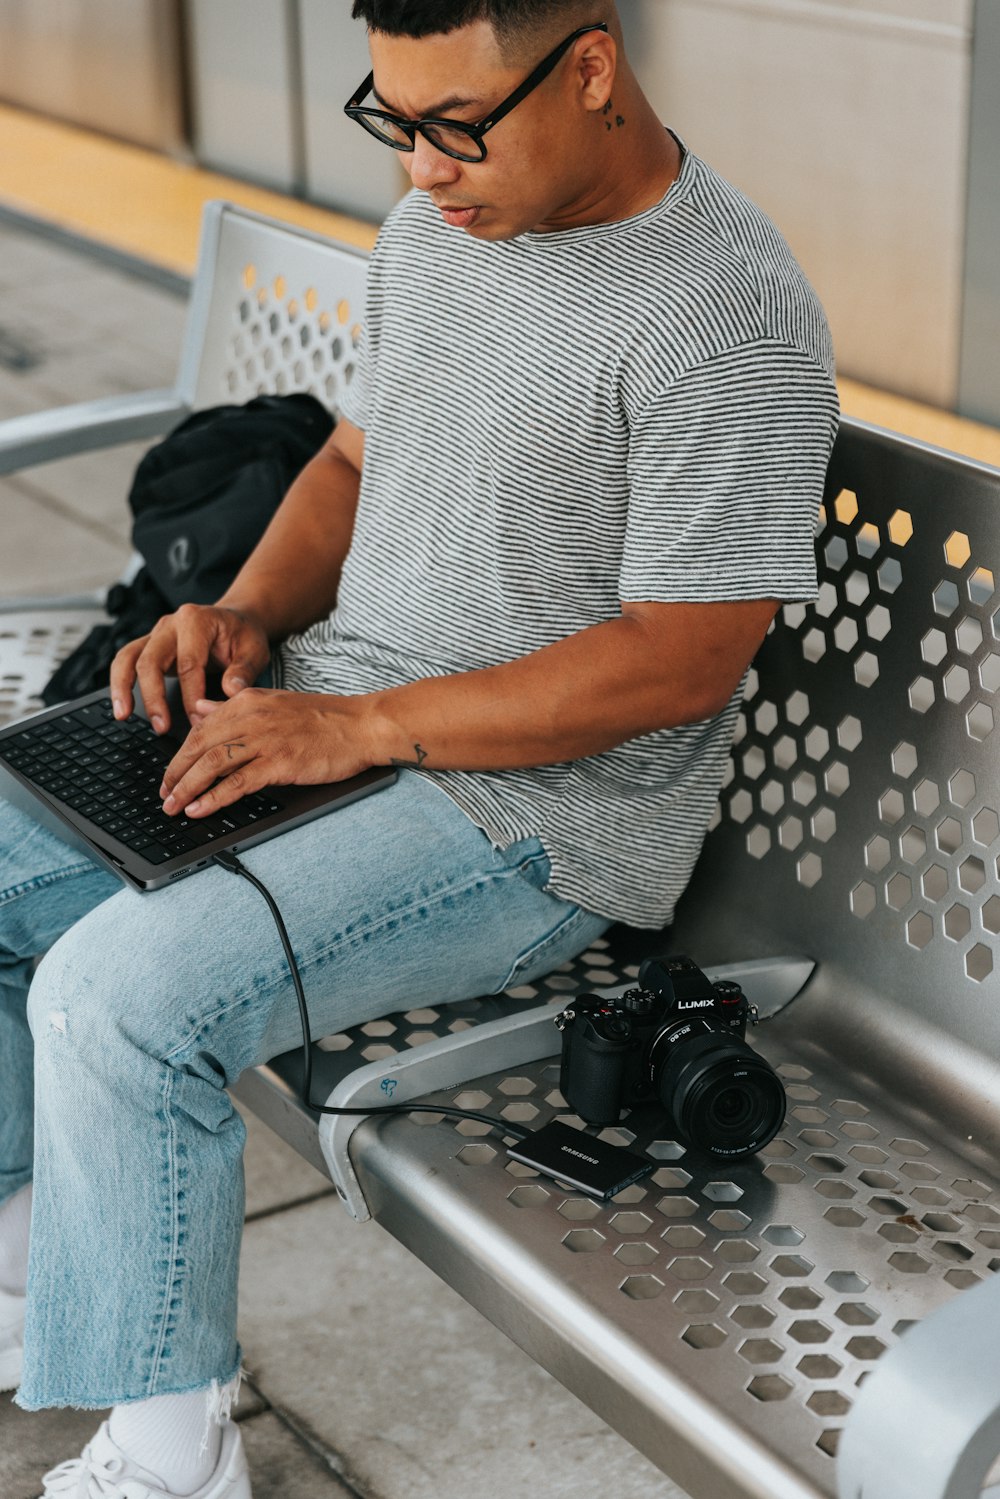 une personne assise sur une chaise à l’aide d’un ordinateur portable